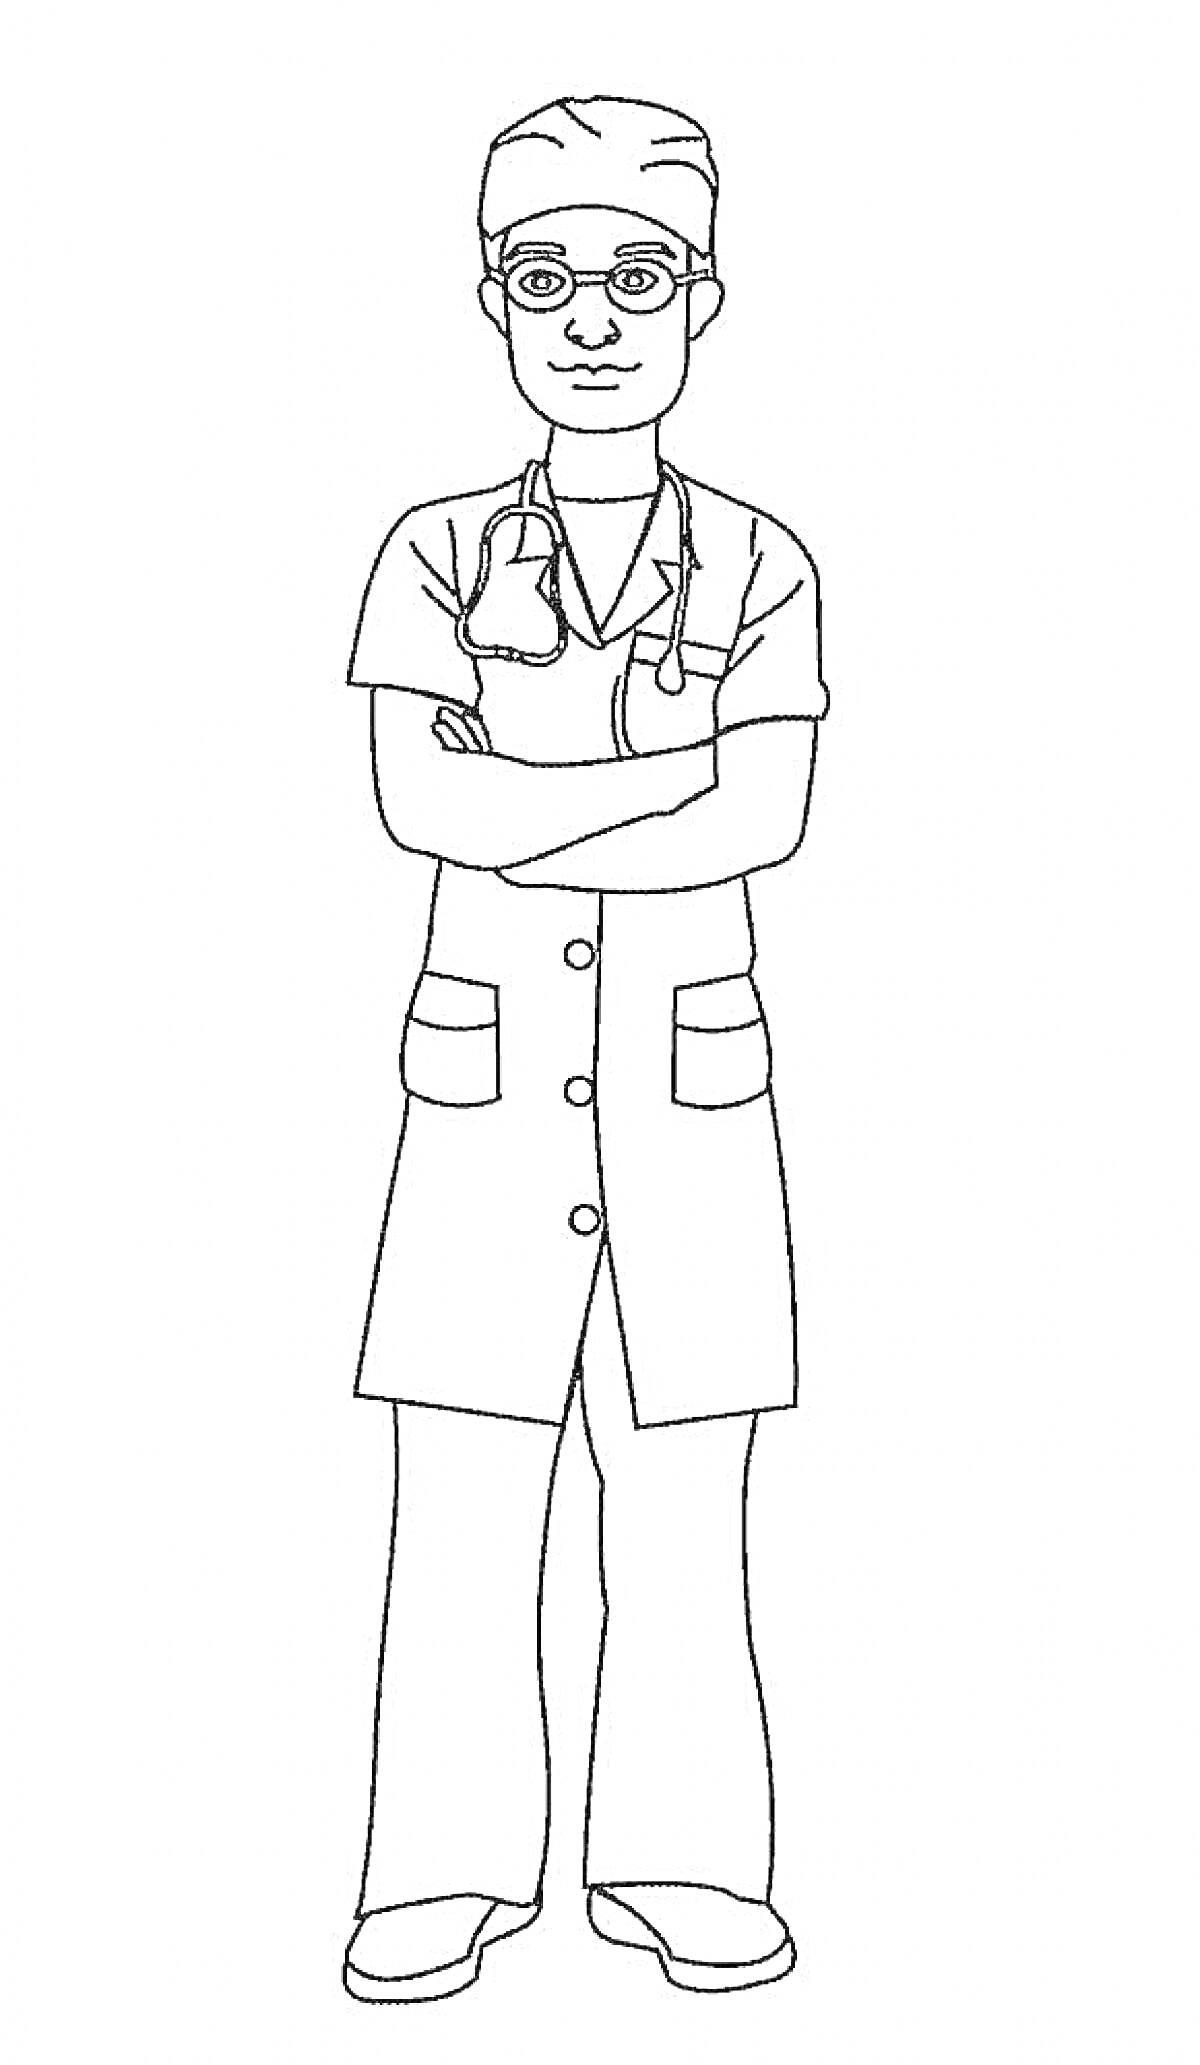 Раскраска Доктор в медицинской форме с очками, верхней шапочкой и стетоскопом на шее